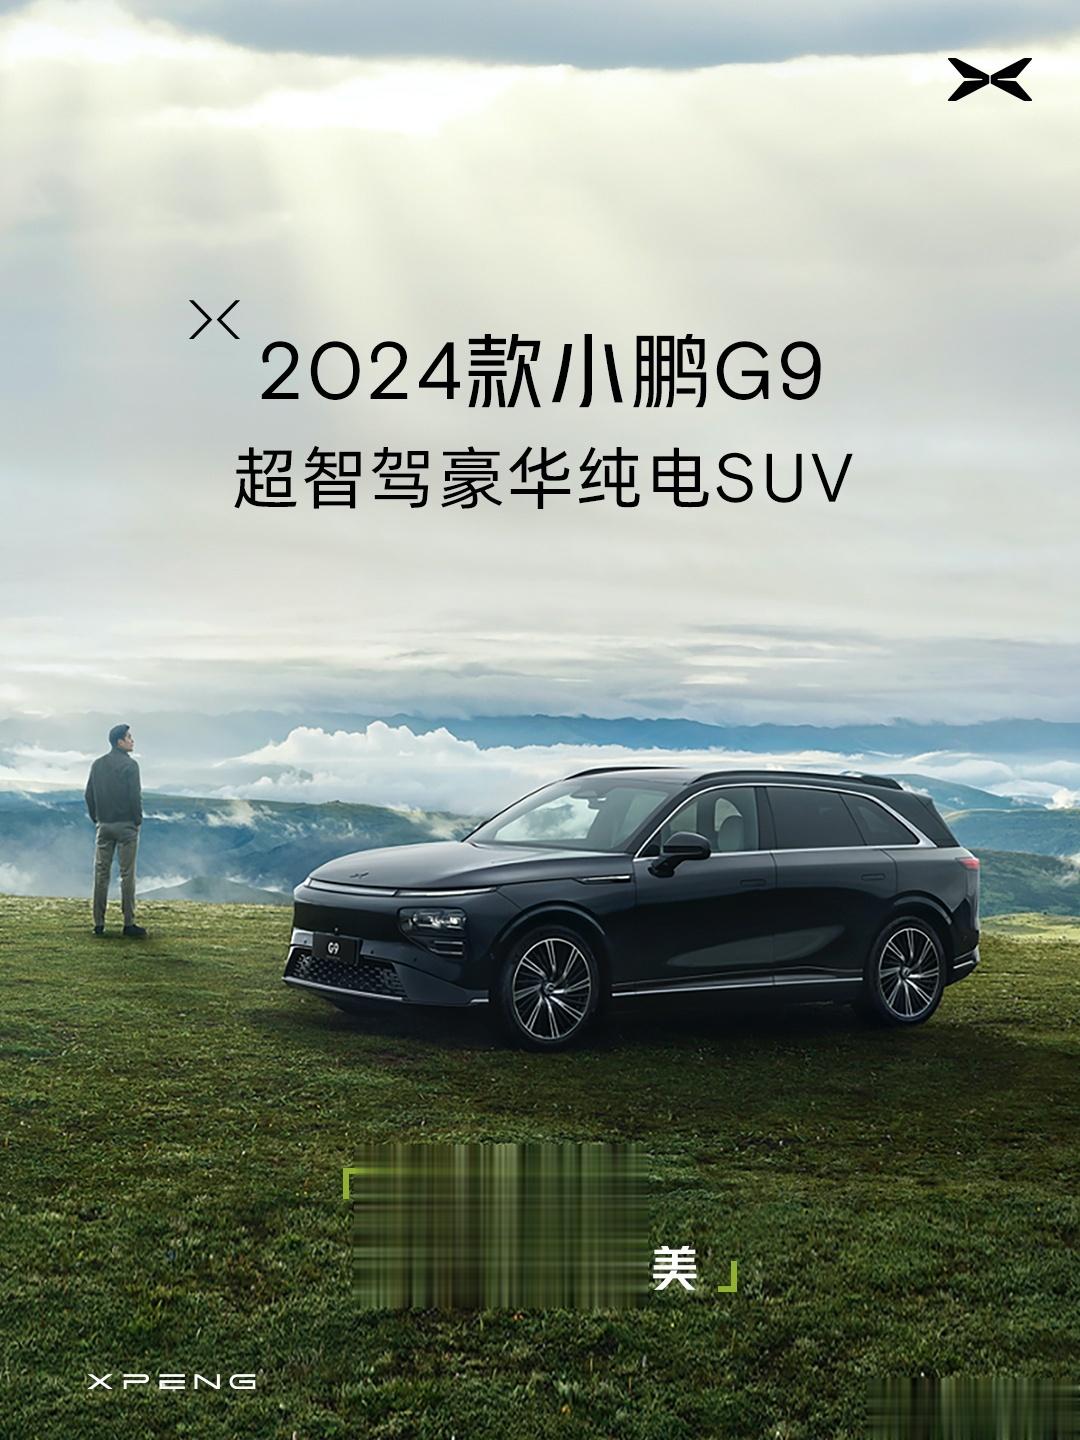 2024 款小鹏 G9 车型公布, 包括绿、黑、灰、白、银 5 种外观配色